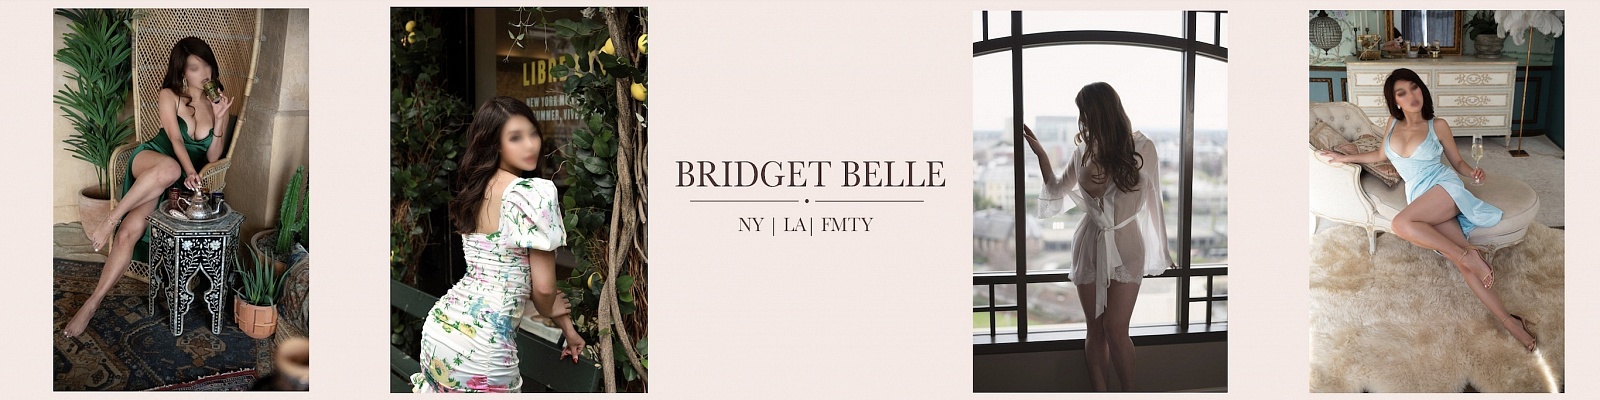 Bridget Belle’s Cover Photo